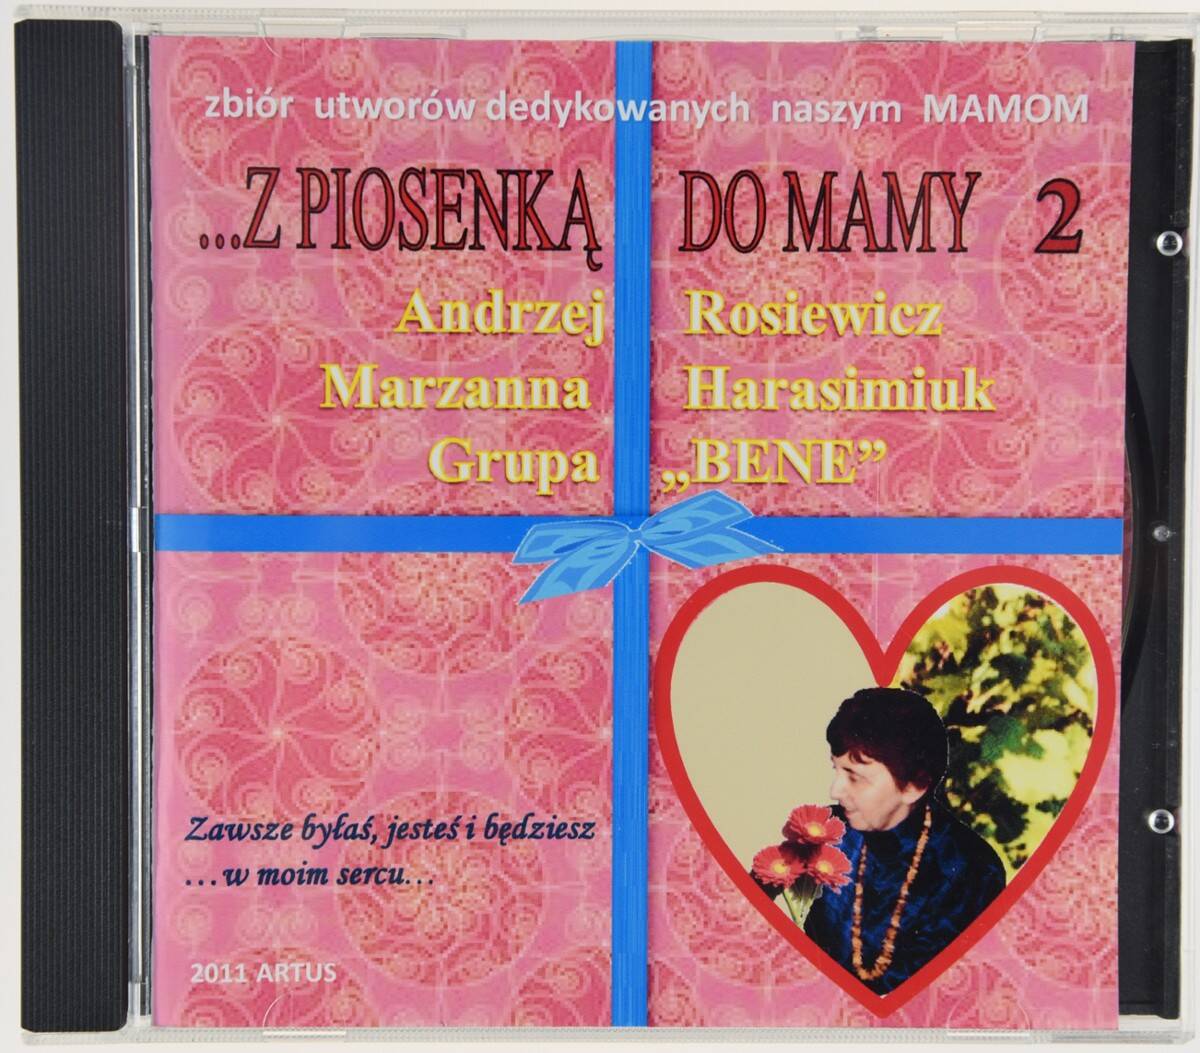 CD Rosiewicz Z piosenką do mamy 2